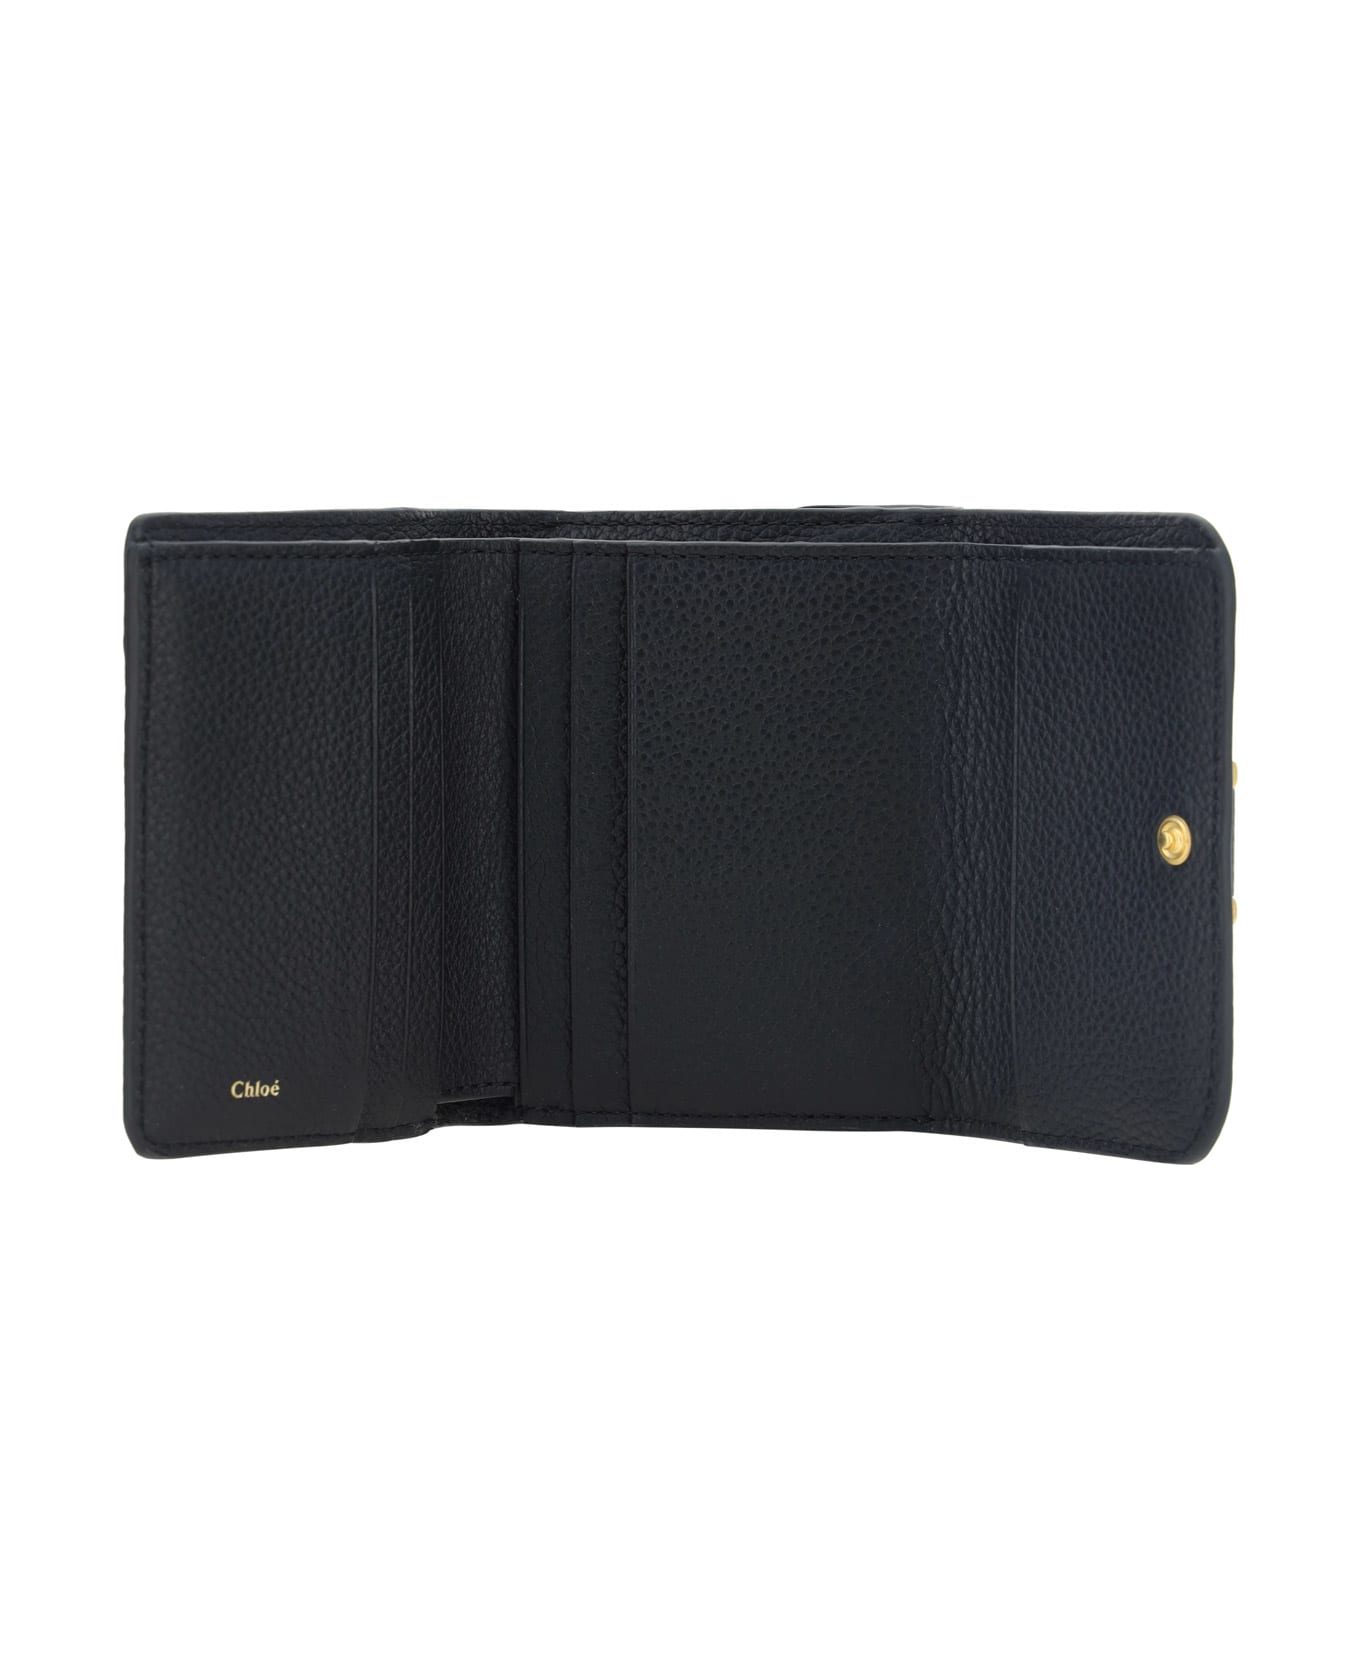 Chloé 'marcie' Wallet - Black 財布